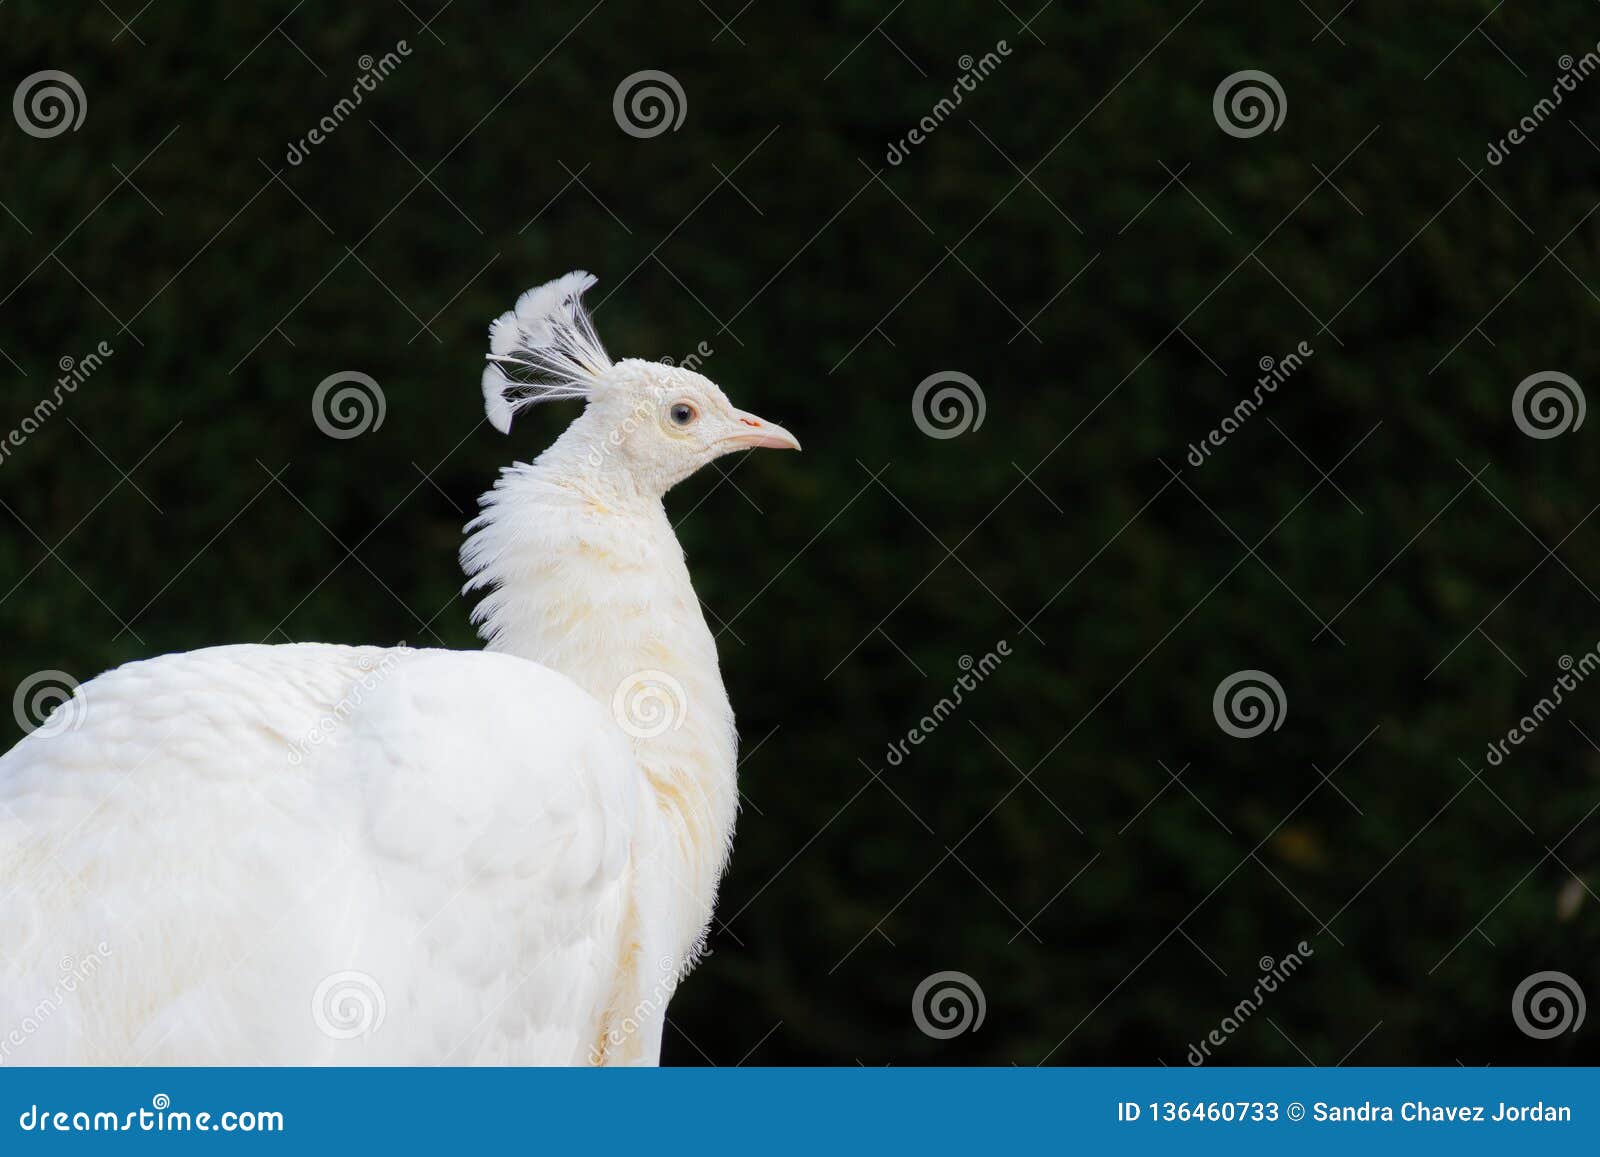 albino peacock in a dark background